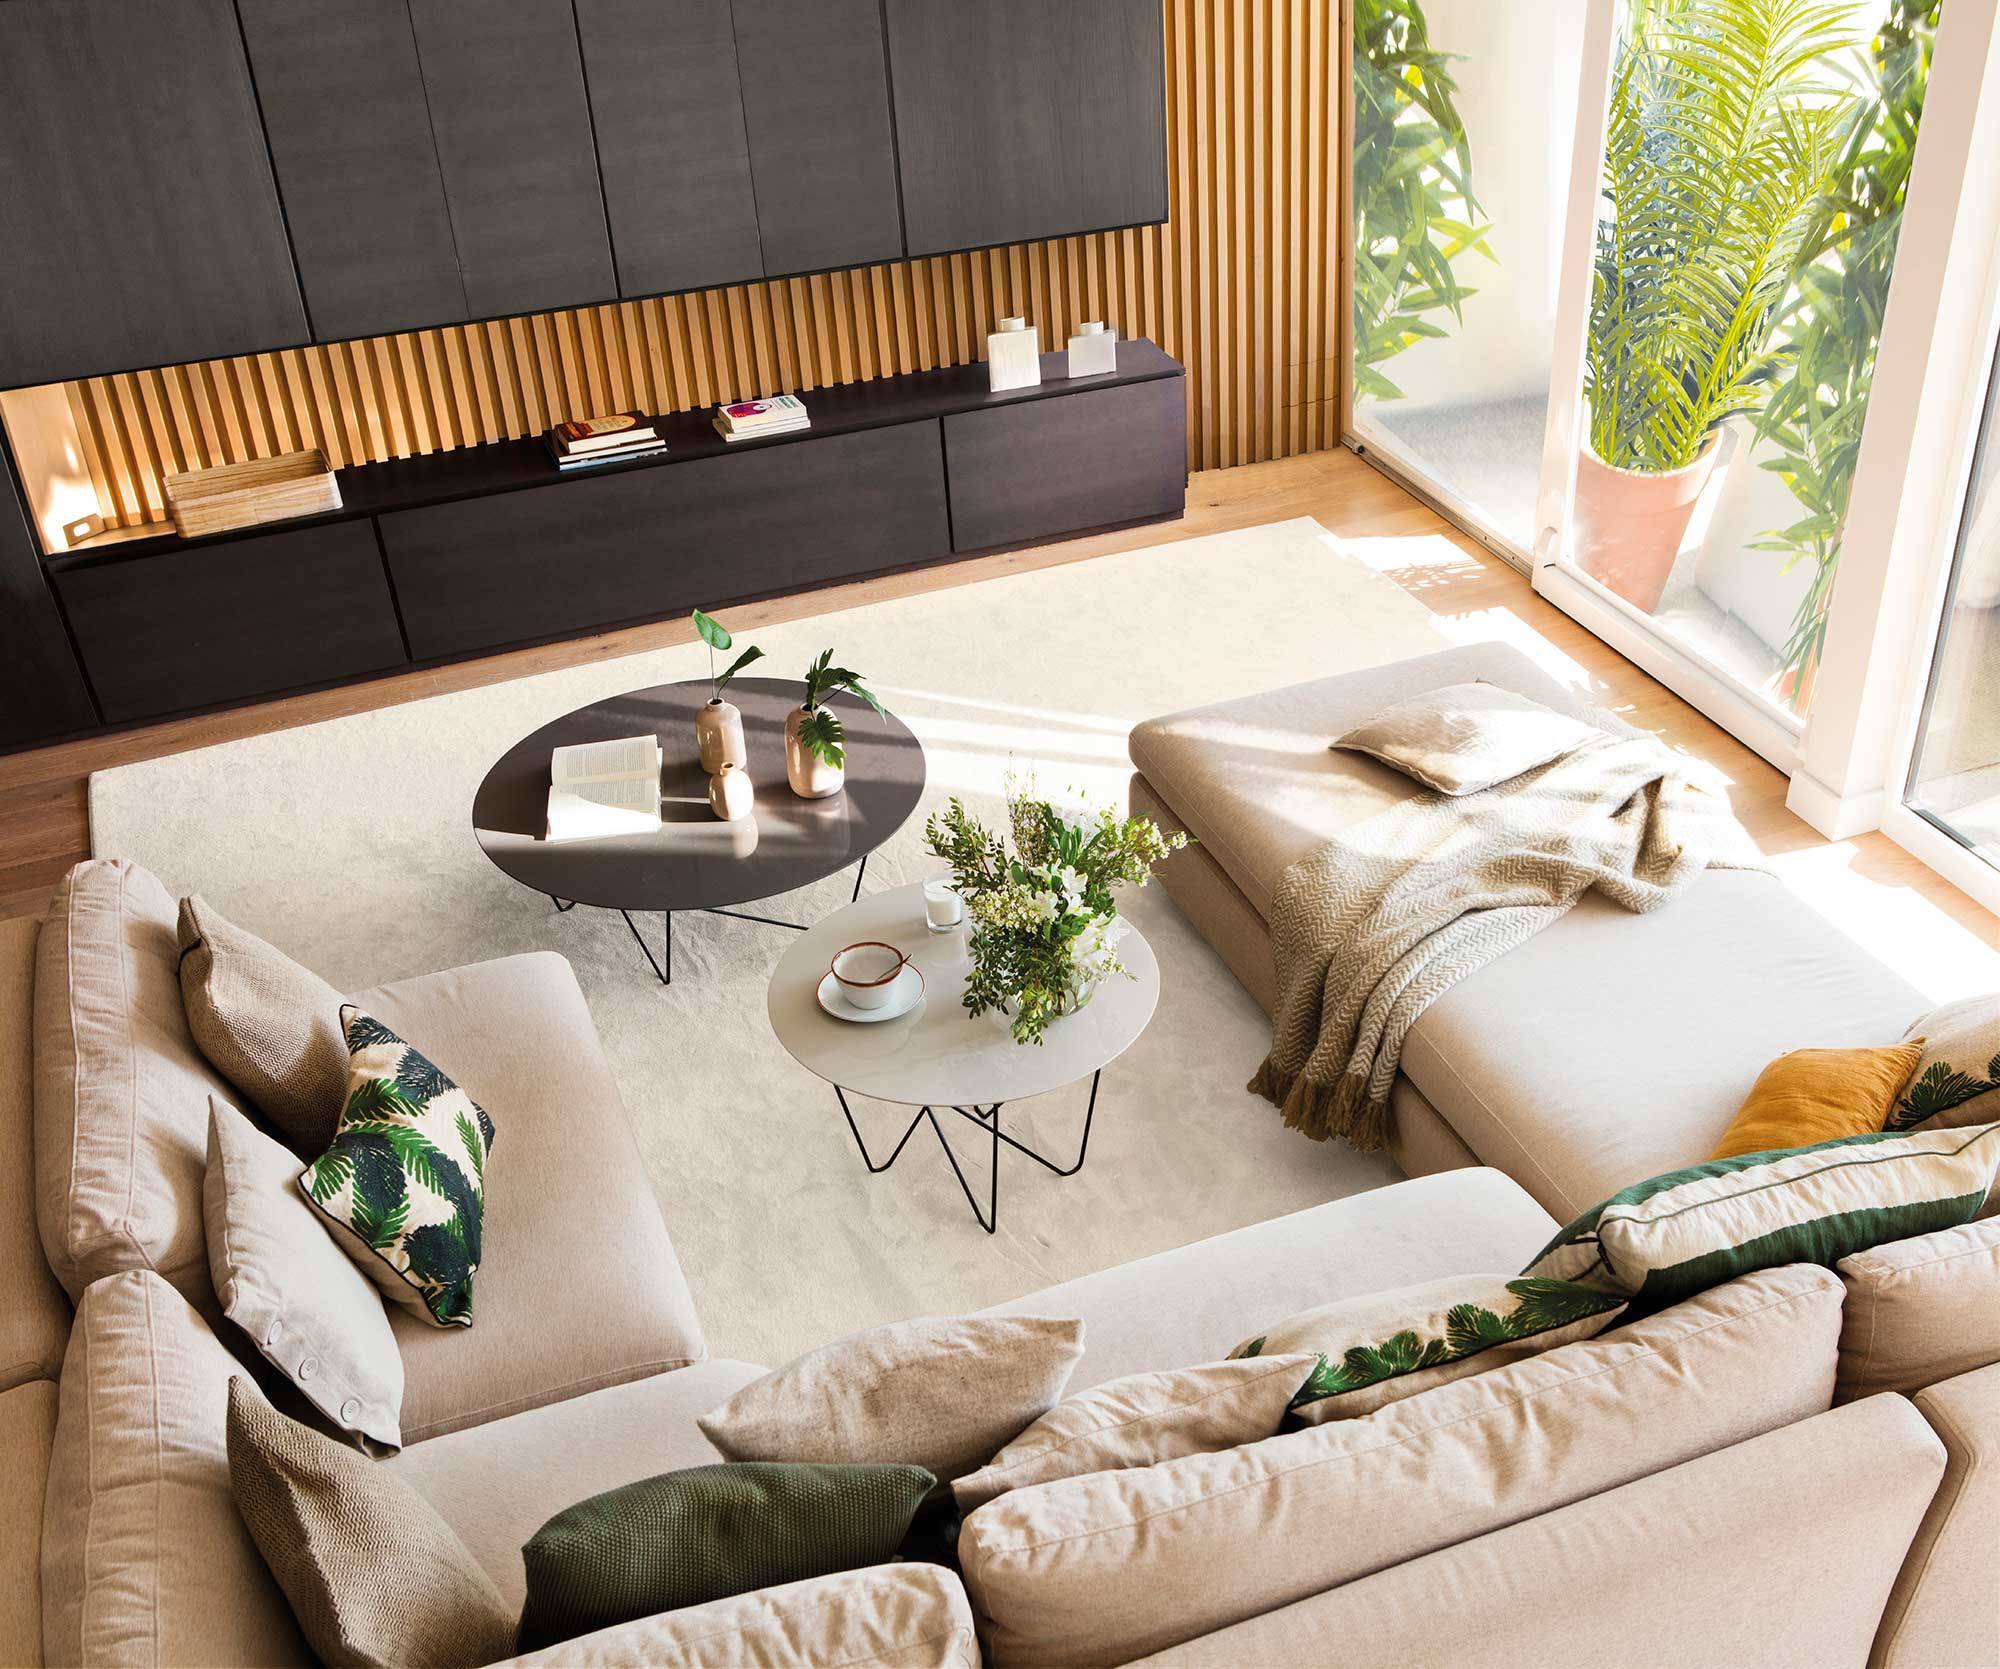 Vista cenital de salón moderno con sofá en "U" y mueble de madera y negro_00519896